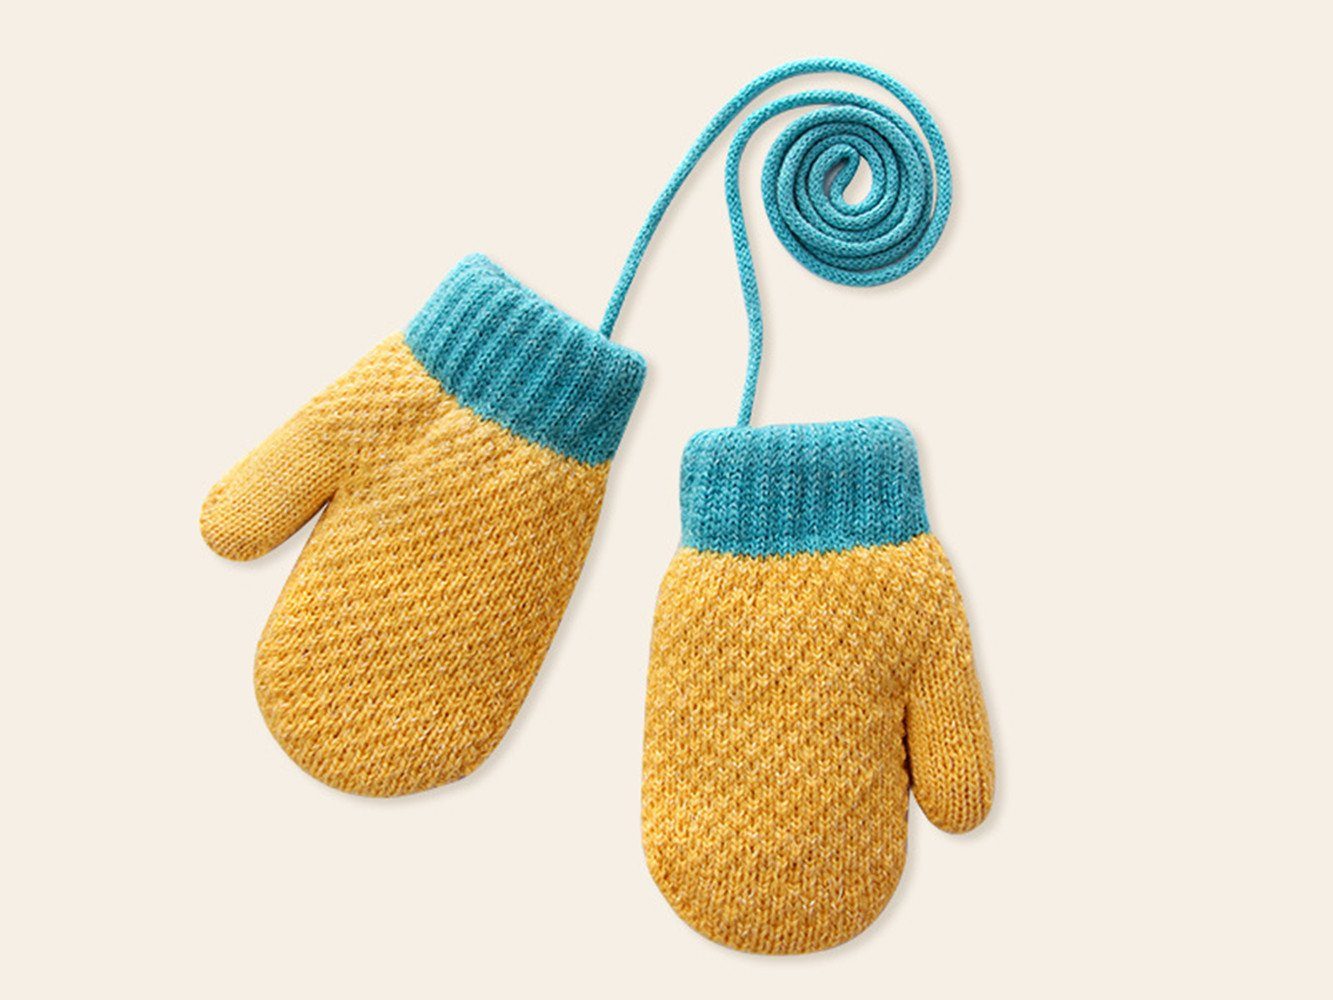 XDeer Fäustlinge Baby Handschuhe, Fäustlinge Kinder Winterhandschuhe Warm Strickhandschuhe mit Schlüsselband für 1-3 Jahre Mädchen Junge yellow